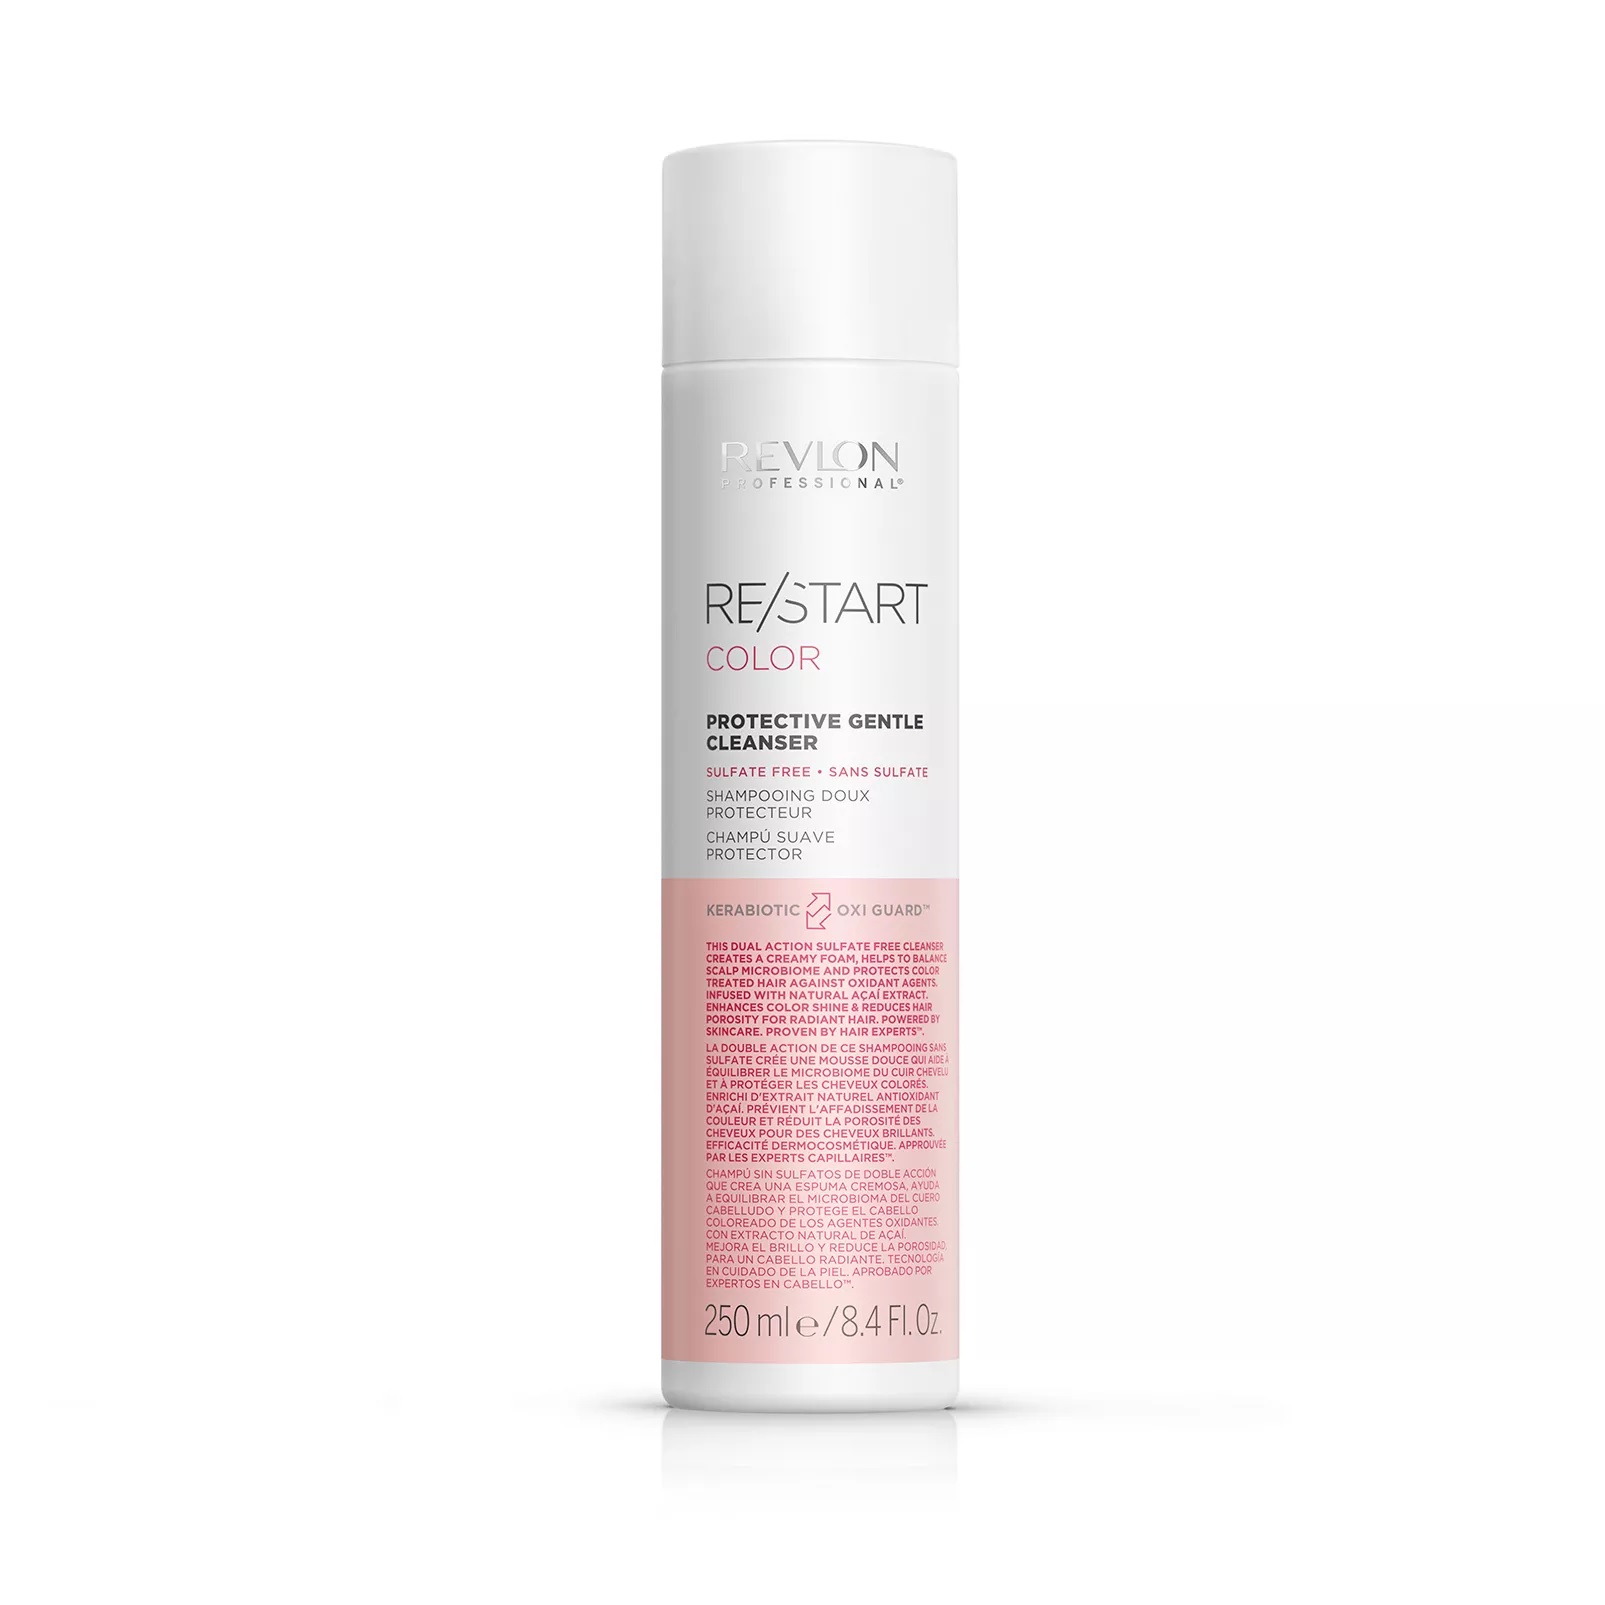 REVLON, Шампунь для нежного очищения окрашенных волос Protective Gentle Cleanser Restart Color, 250 мл.